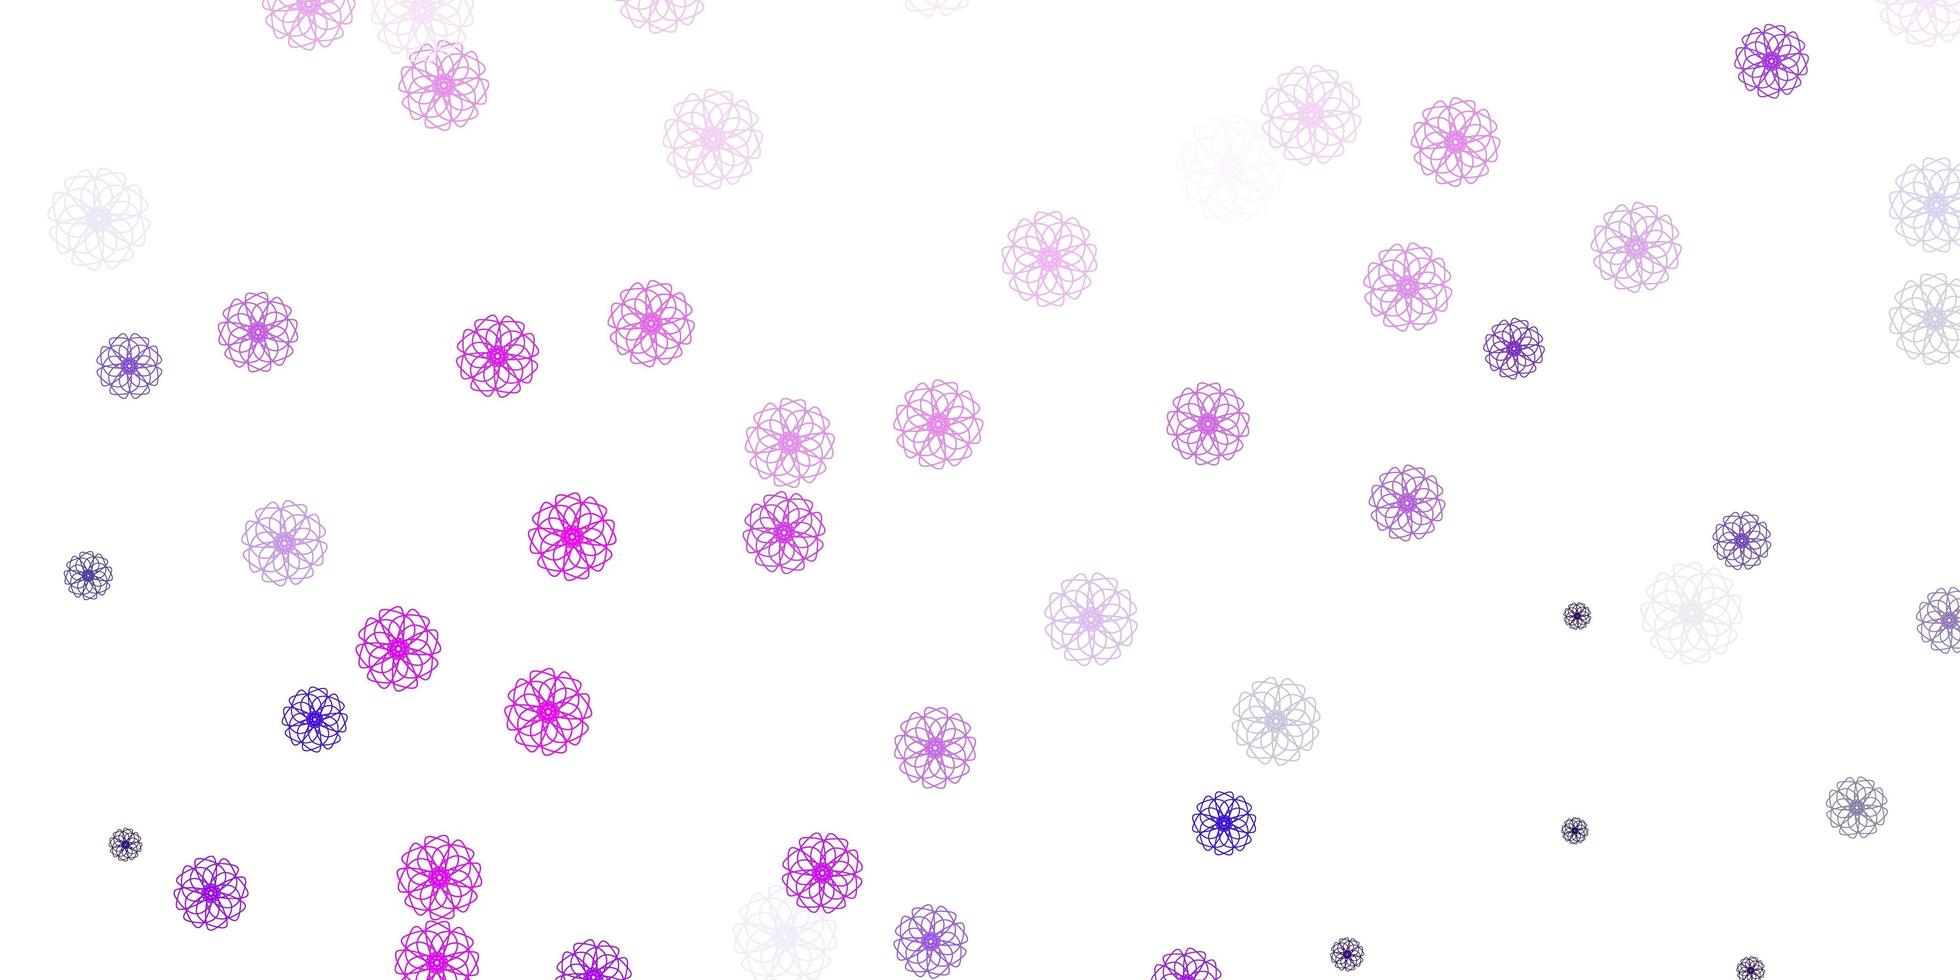 modello di doodle vettoriale viola chiaro con fiori with